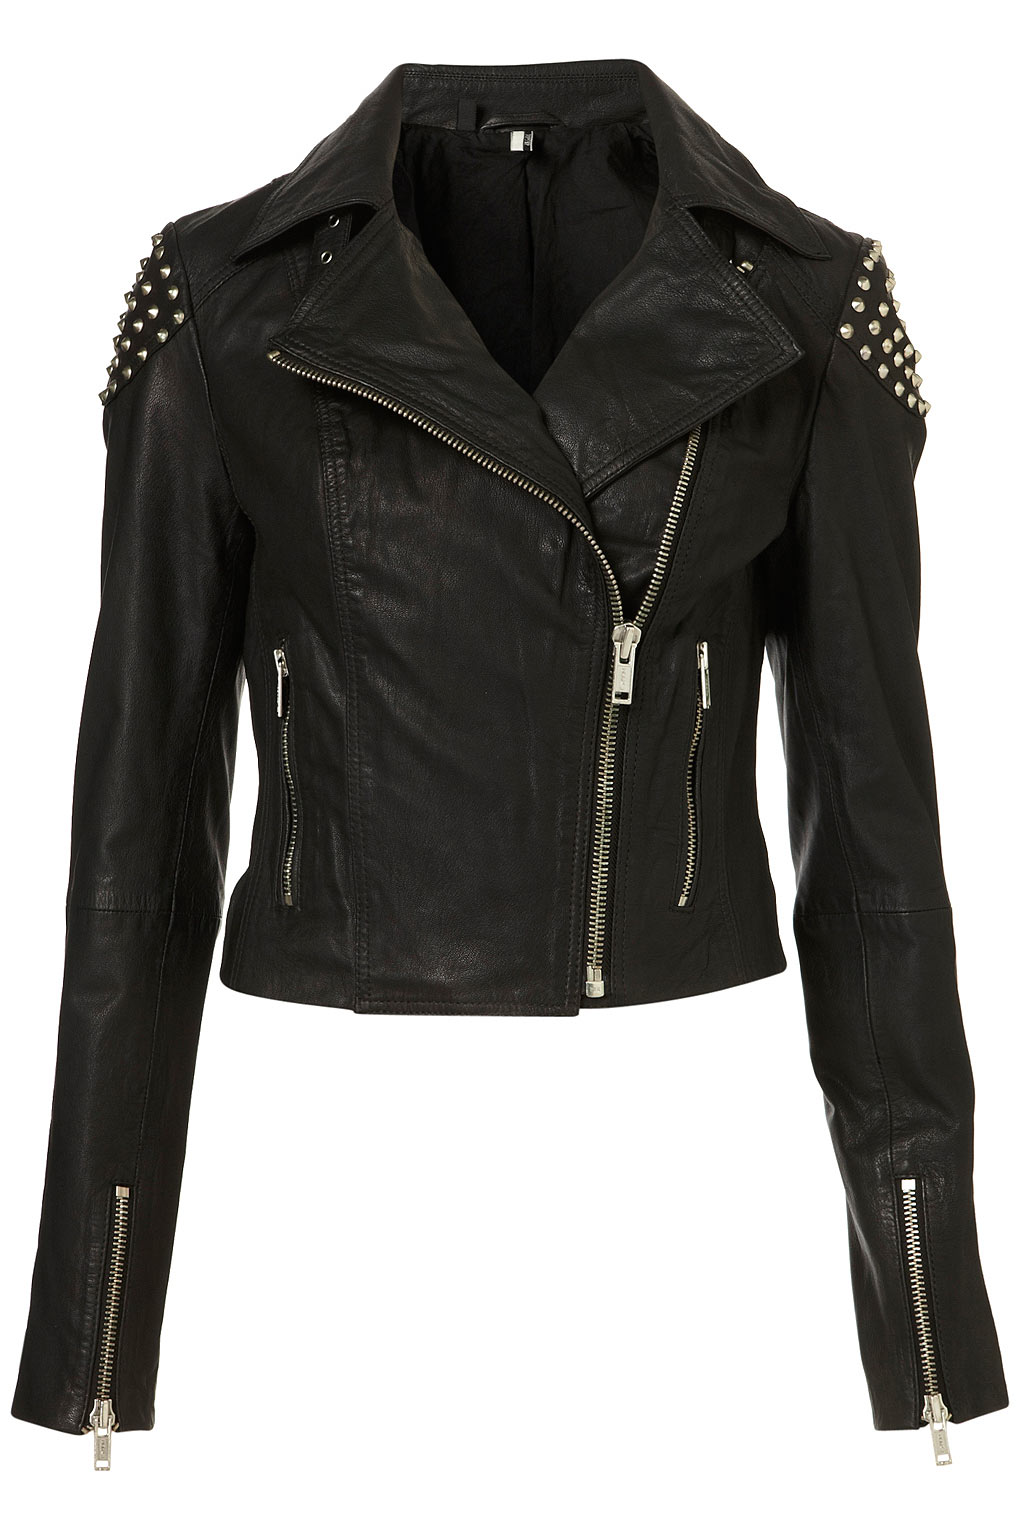 Lyst - Topshop Skull Studded Leather Biker Jacket in Black